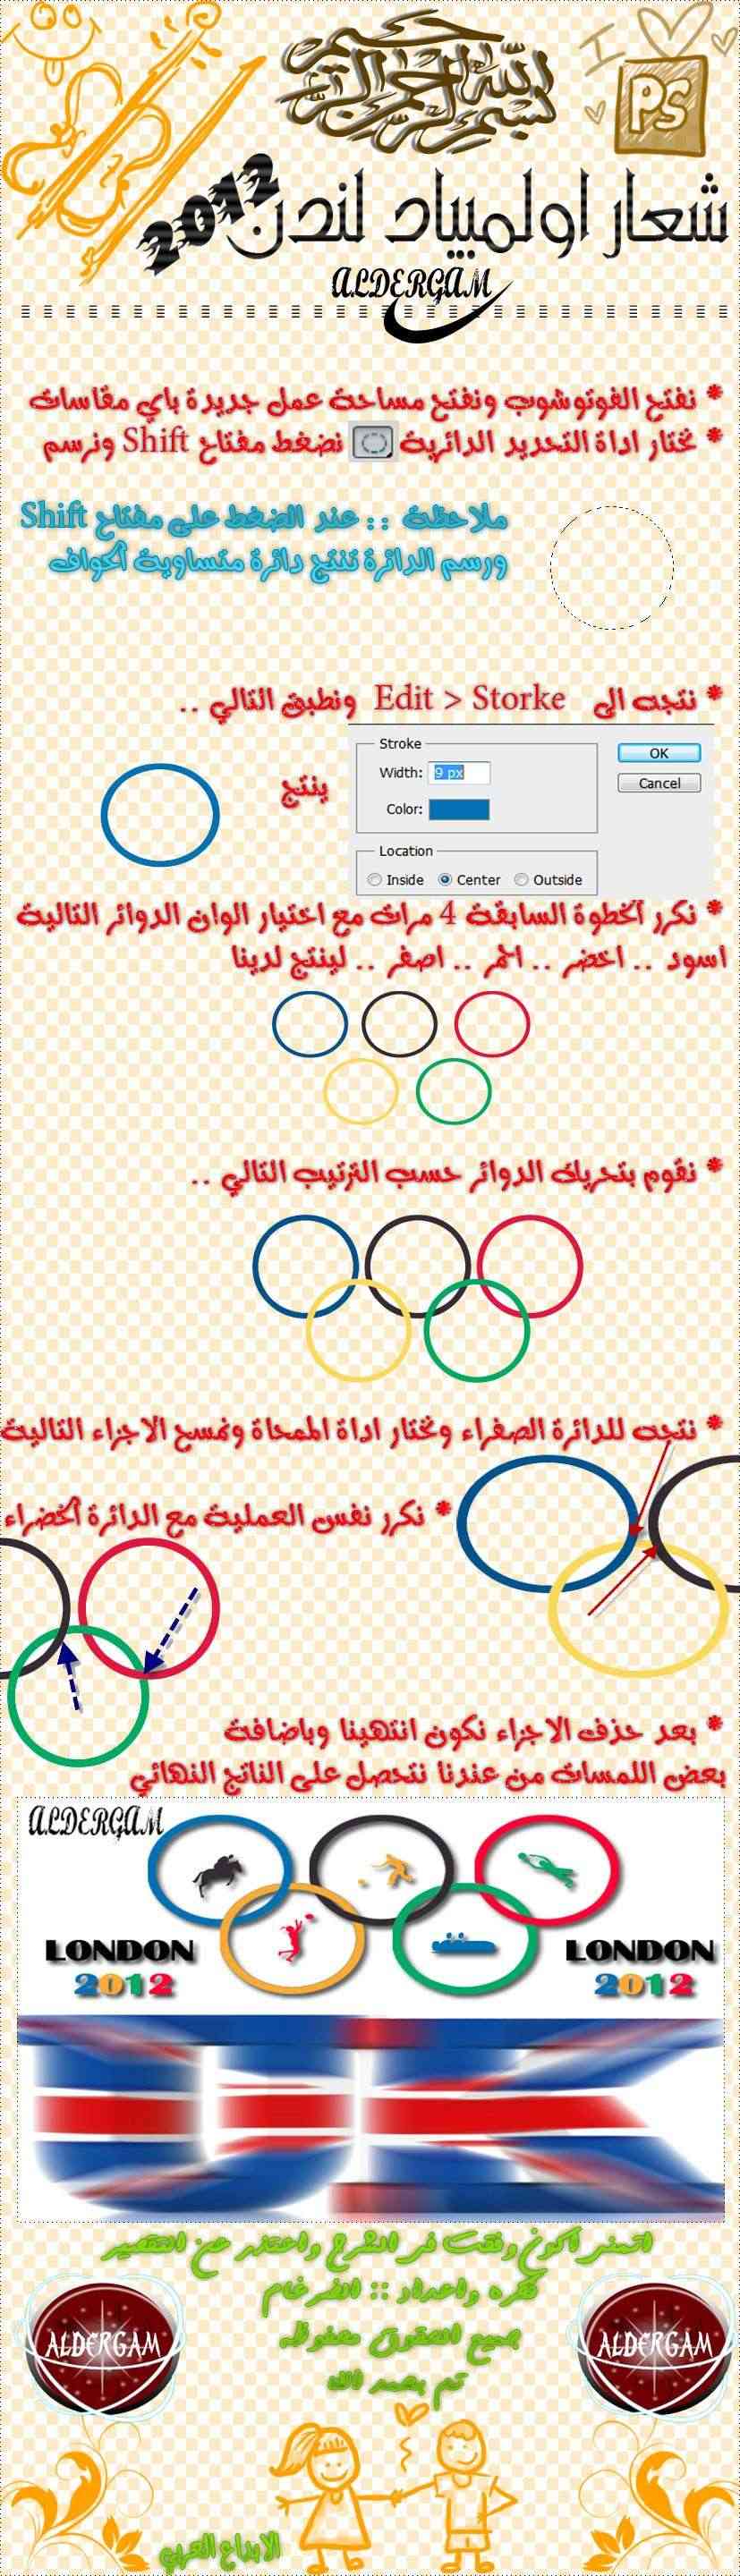 تصميمـ شعار اولمبياد لندن  - صفحة 4 London12